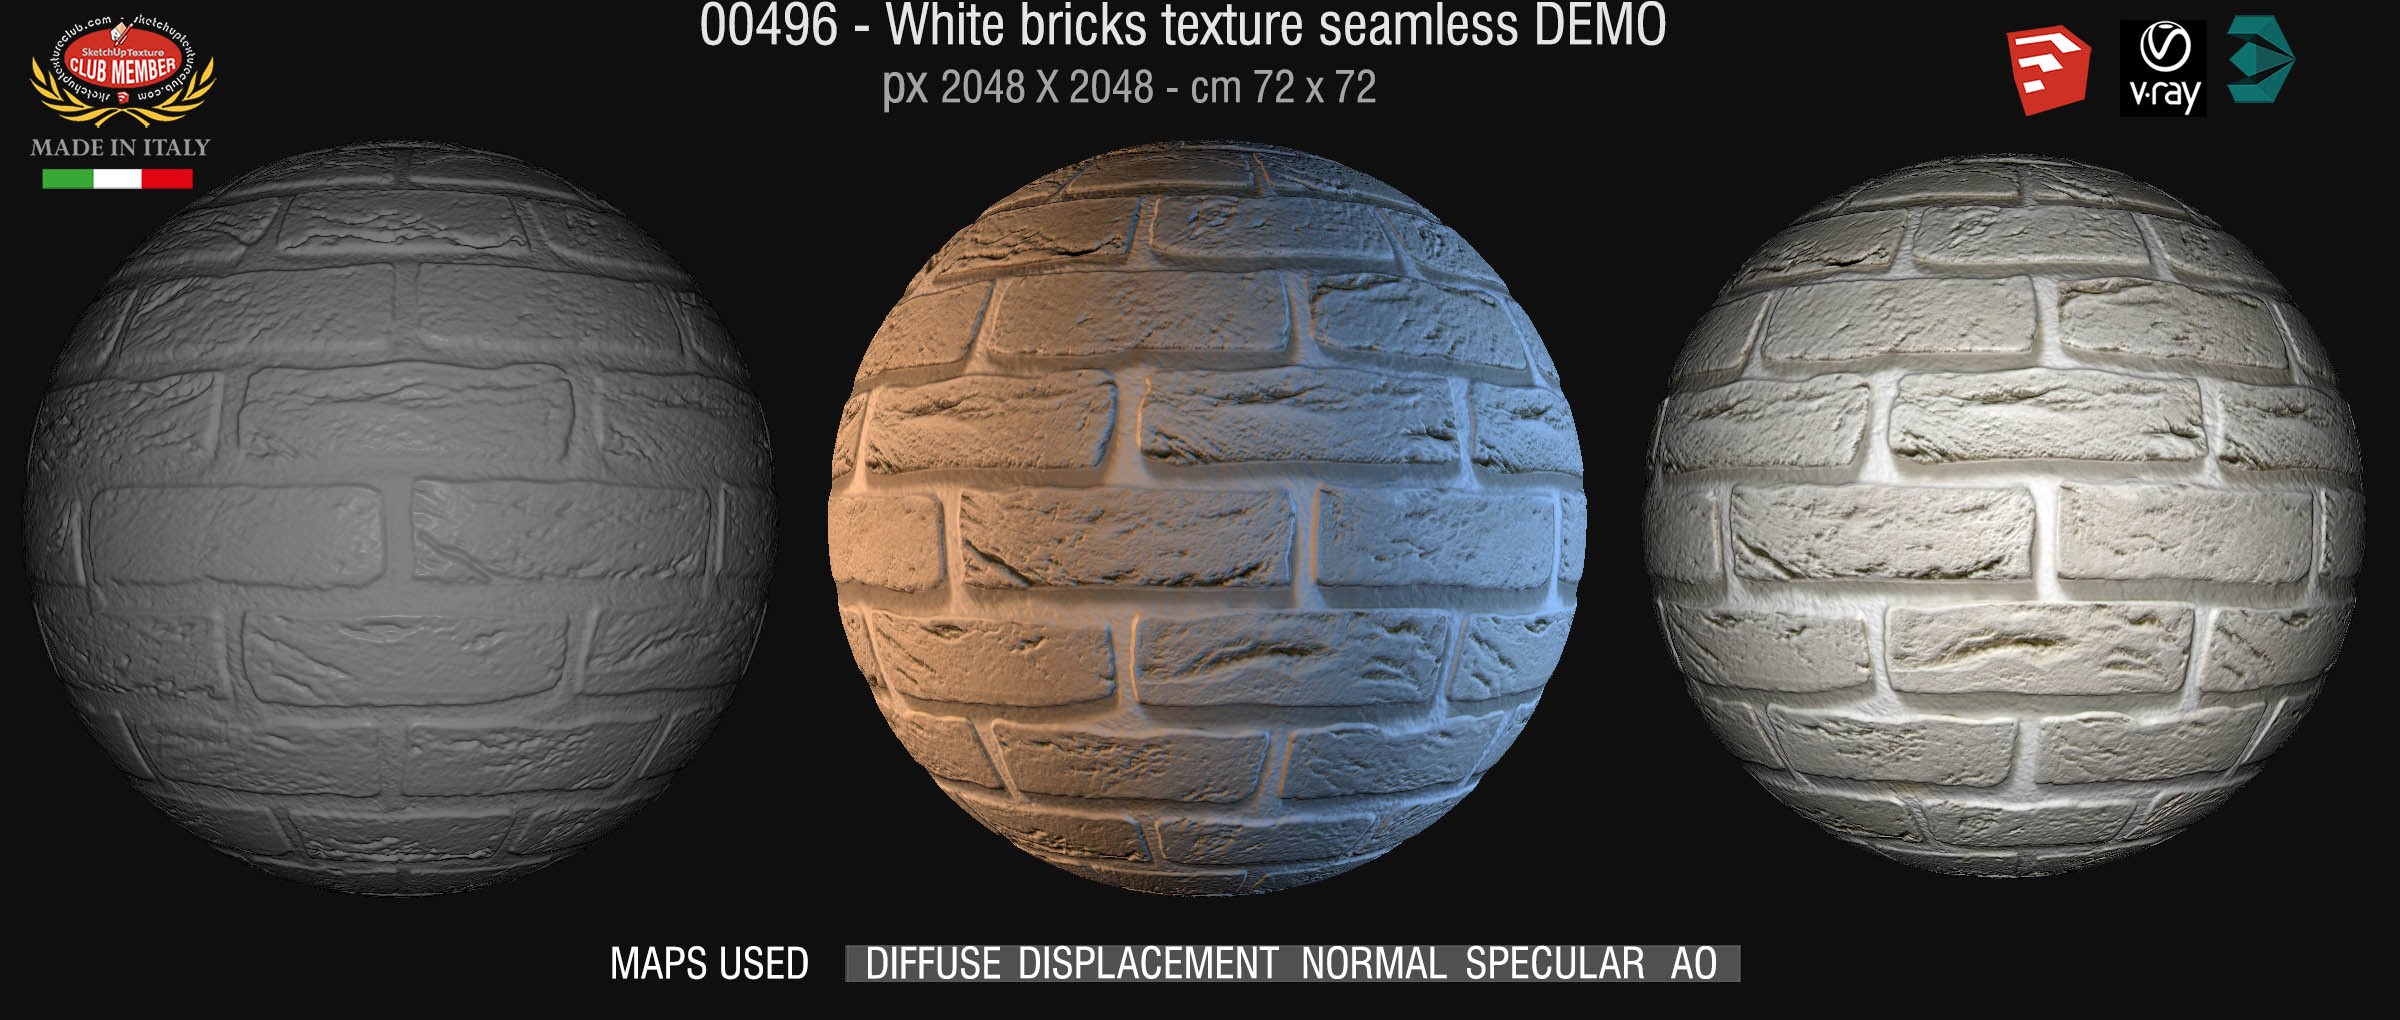 00496 White bricks texture seamless + maps DEMO